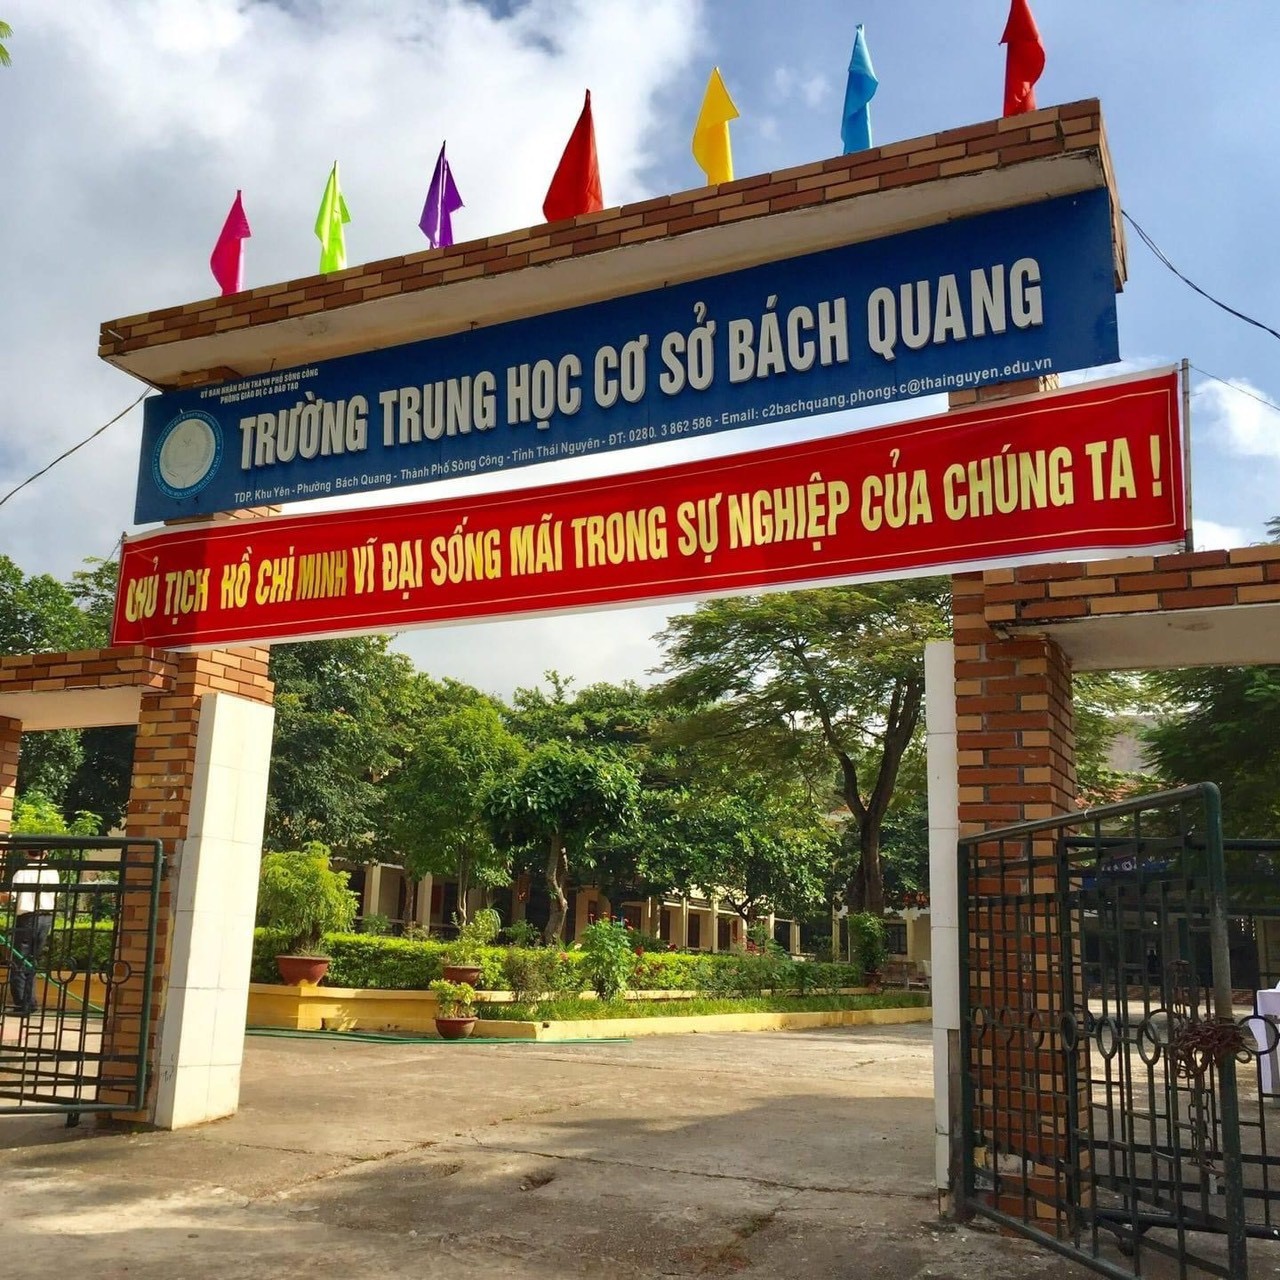 Trường THCS Bách Quang tọa lạc tại Thái Nguyên với cơ sở vật chất hiện đại, đội ngũ giáo viên tâm huyết và chất lượng giáo dục tốt. Hãy cùng khám phá hình ảnh của trường THCS Bách Quang để thấy rõ sự phát triển của trường qua nhiều năm qua.